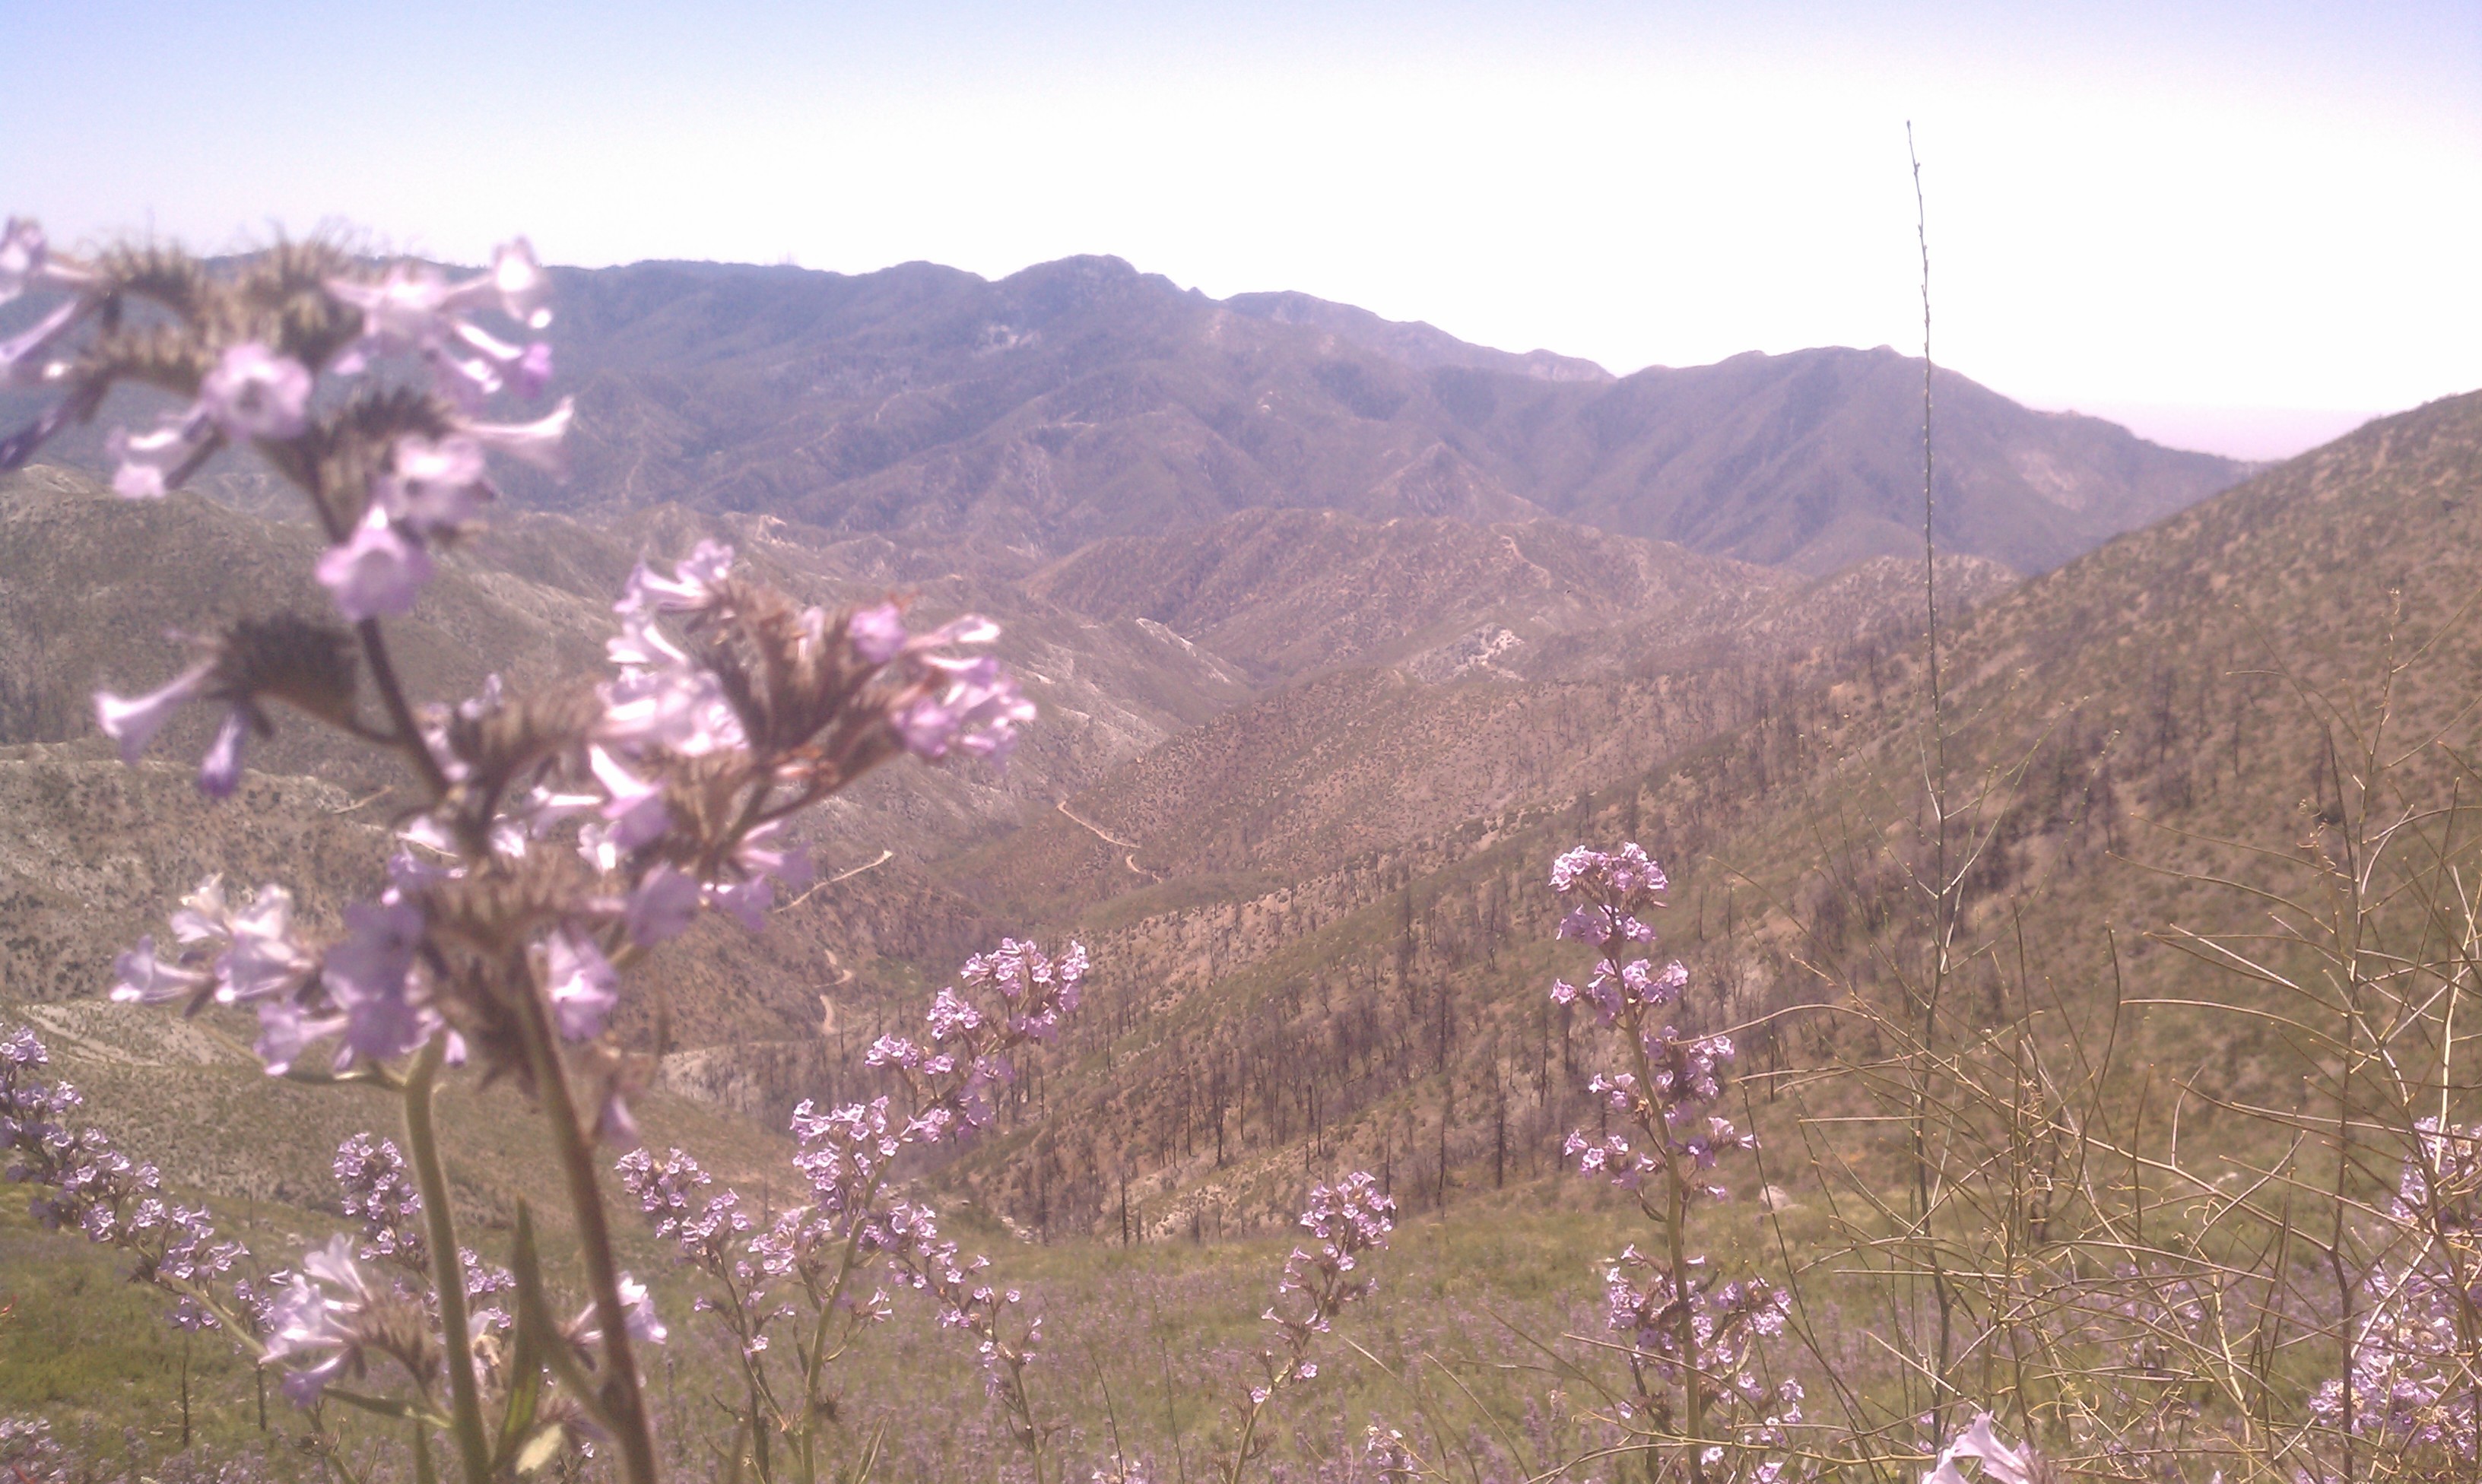 View of San Gabriel Mountains